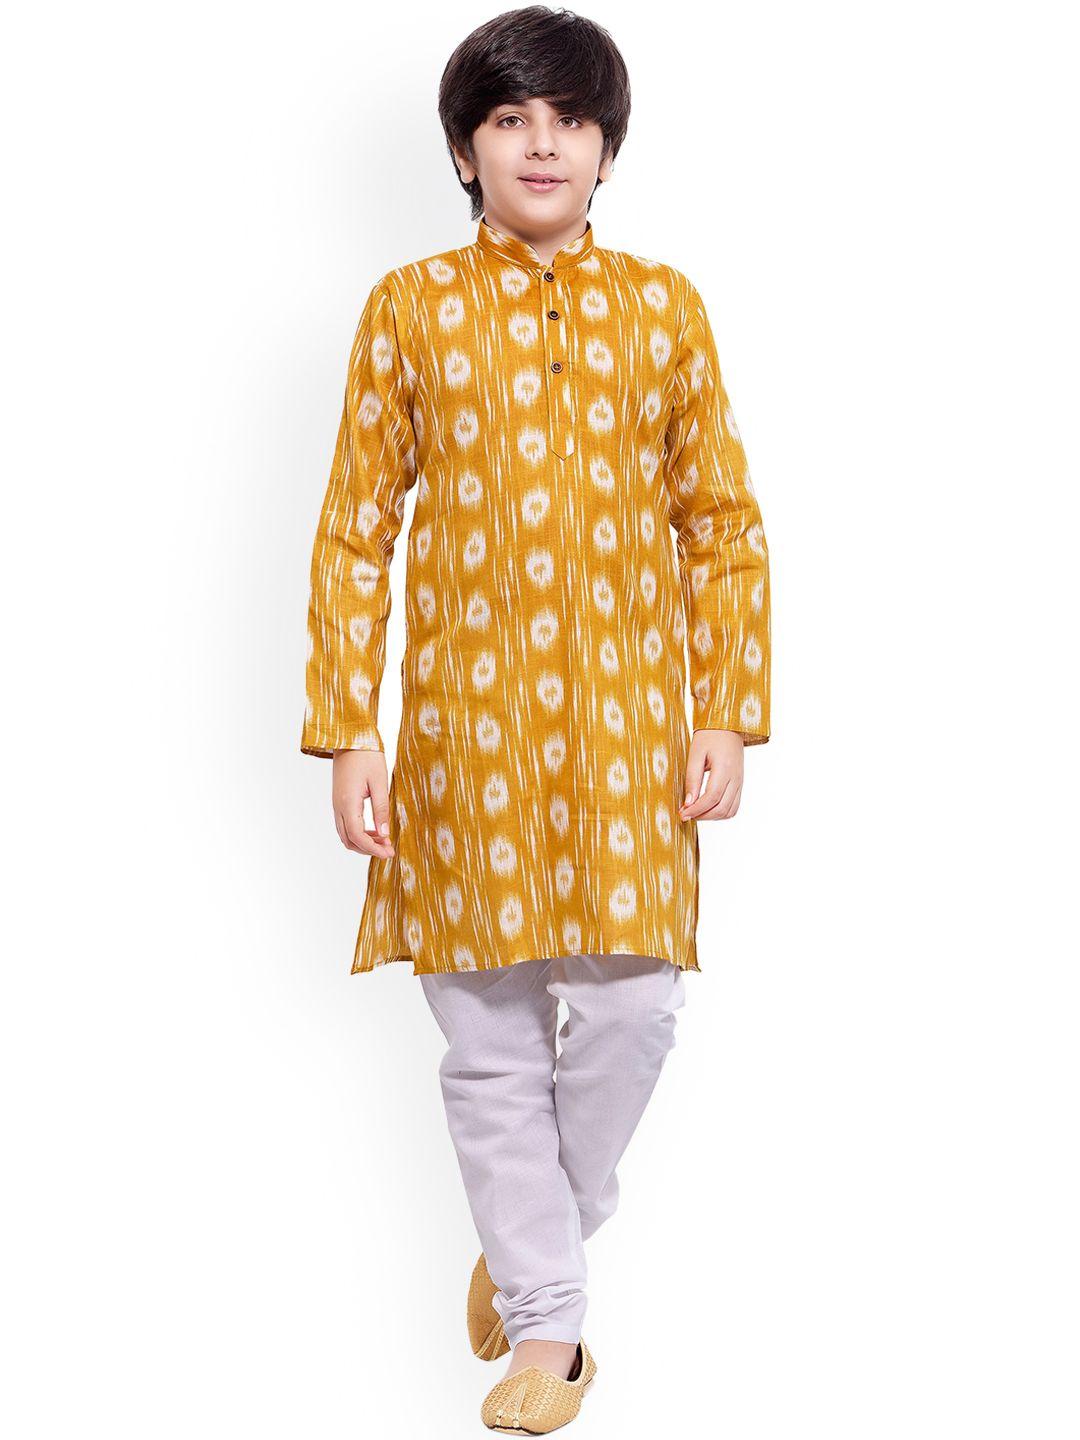 jeetethnics boys yellow printed regular kurta with pyjamas